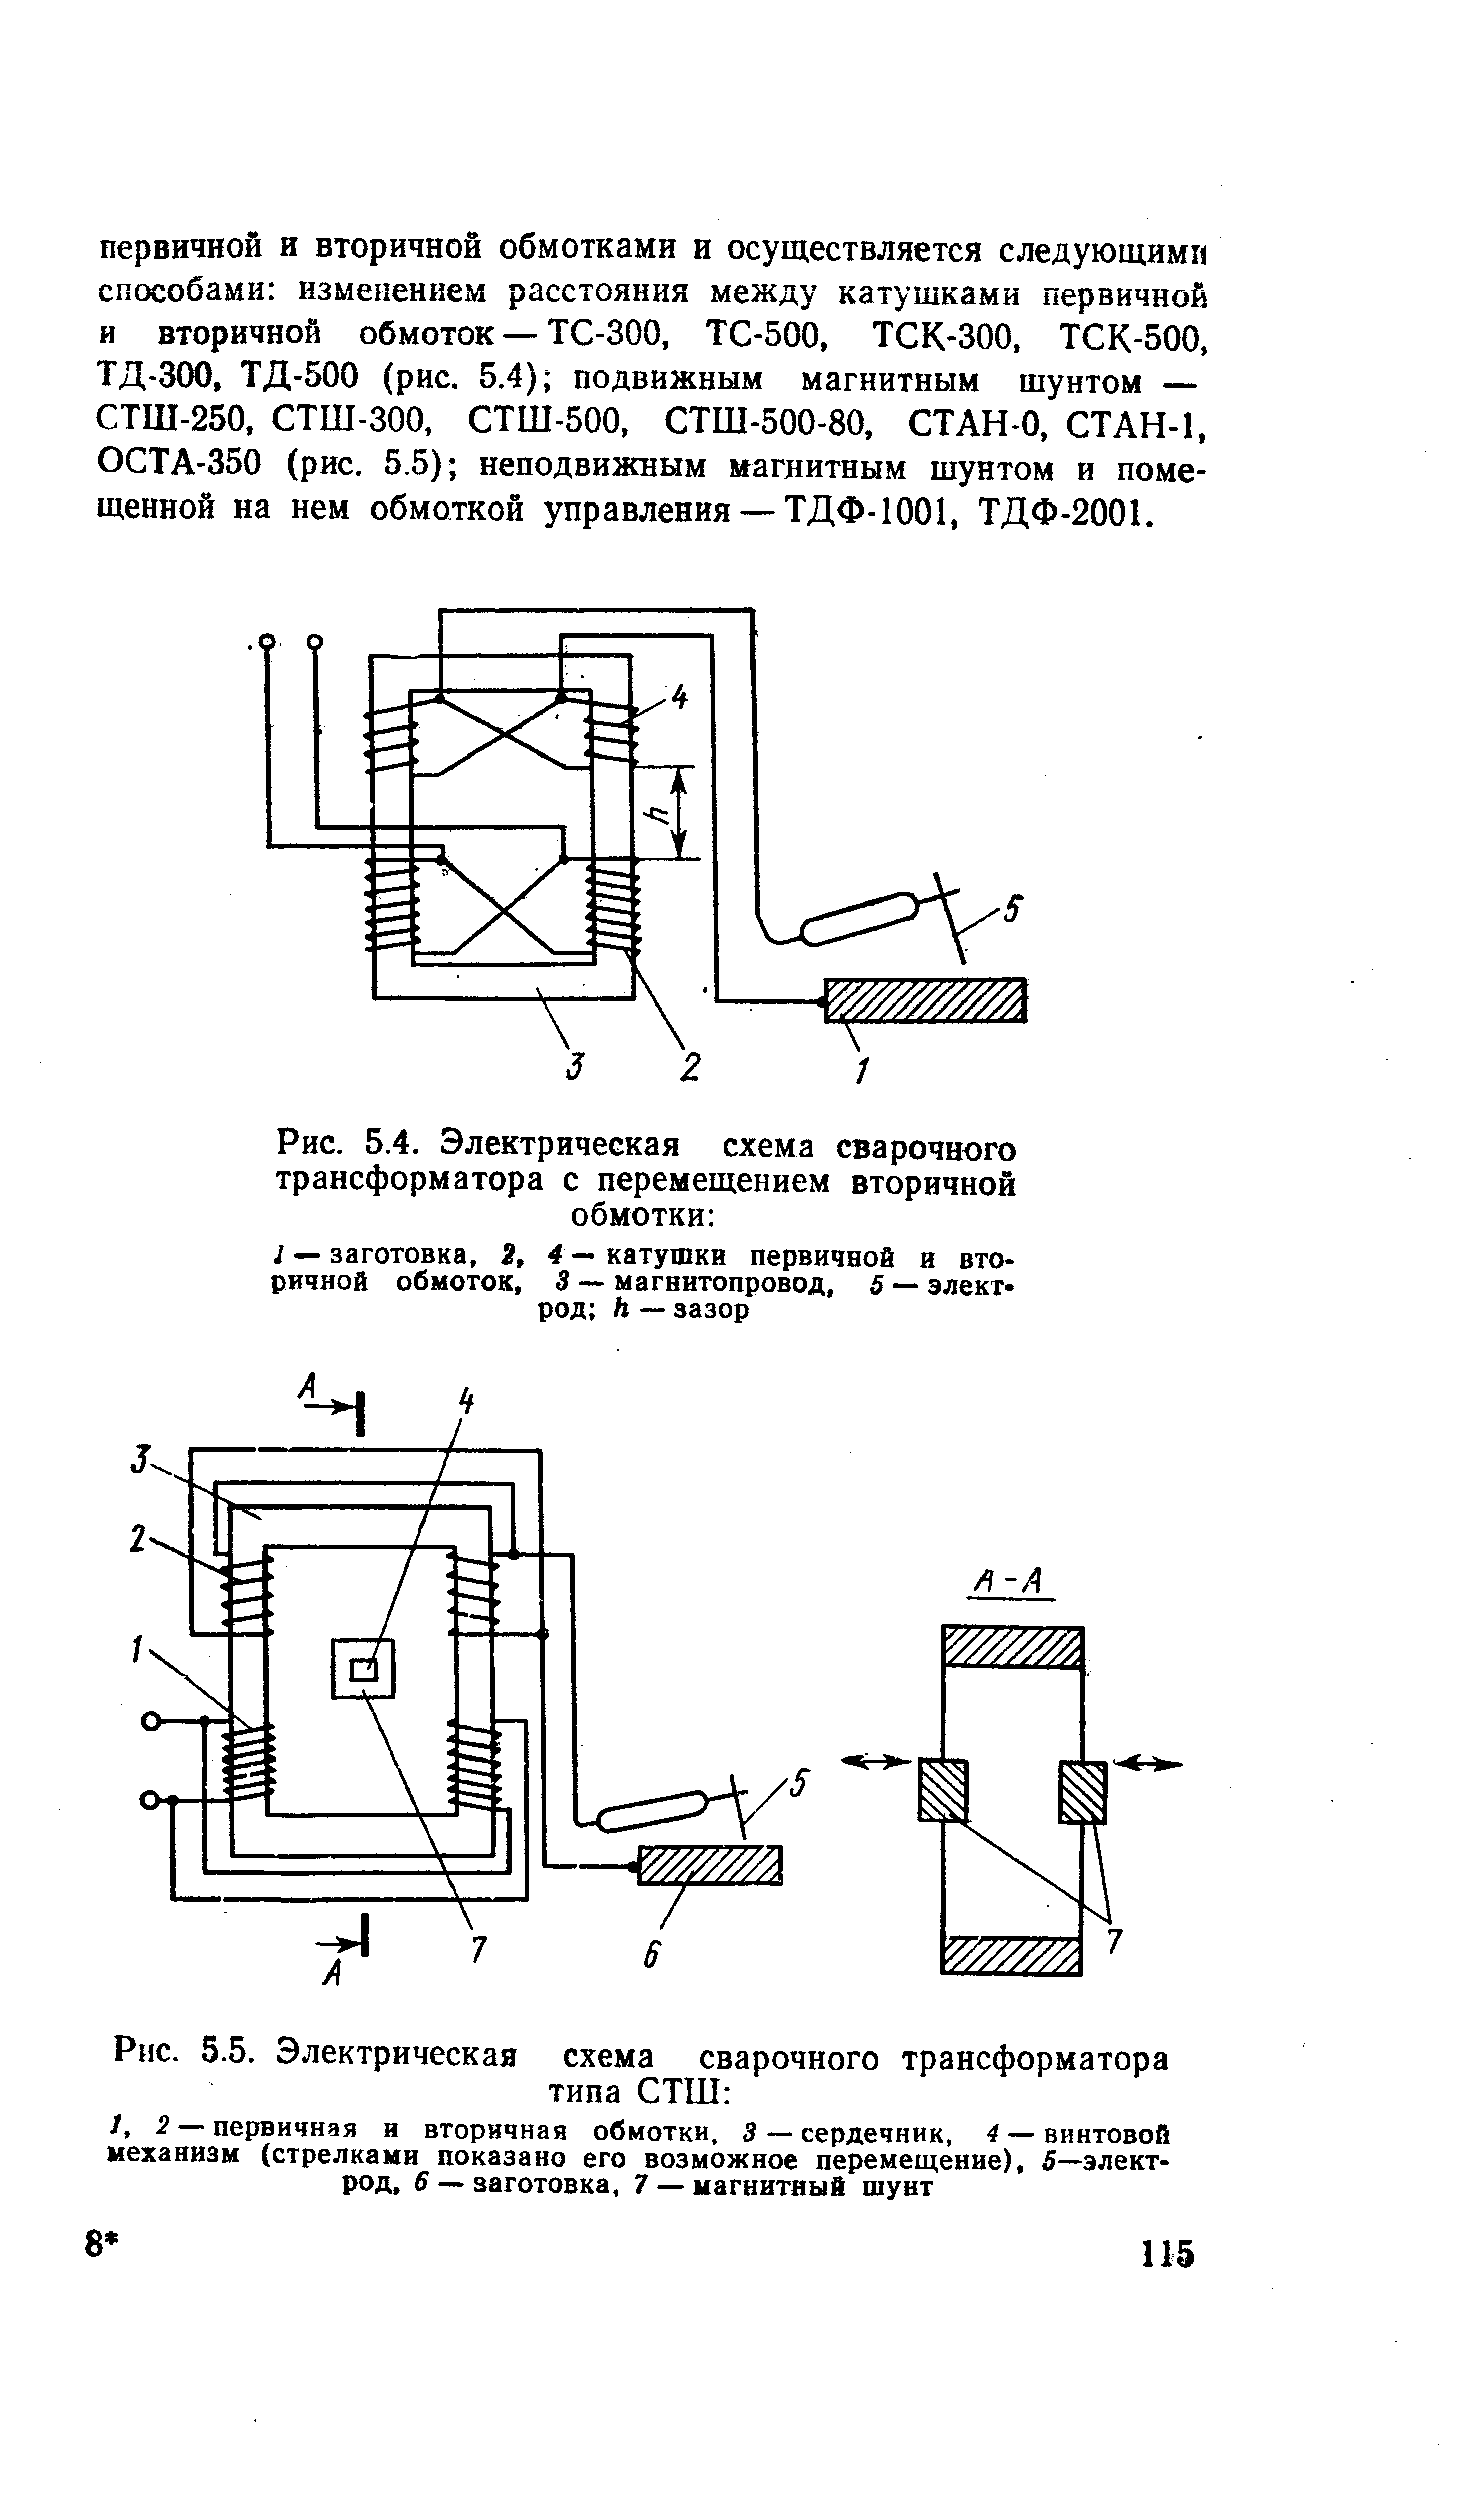 Рис. 5.5. Электрическая схема сварочного трансформатора типа СТШ 
